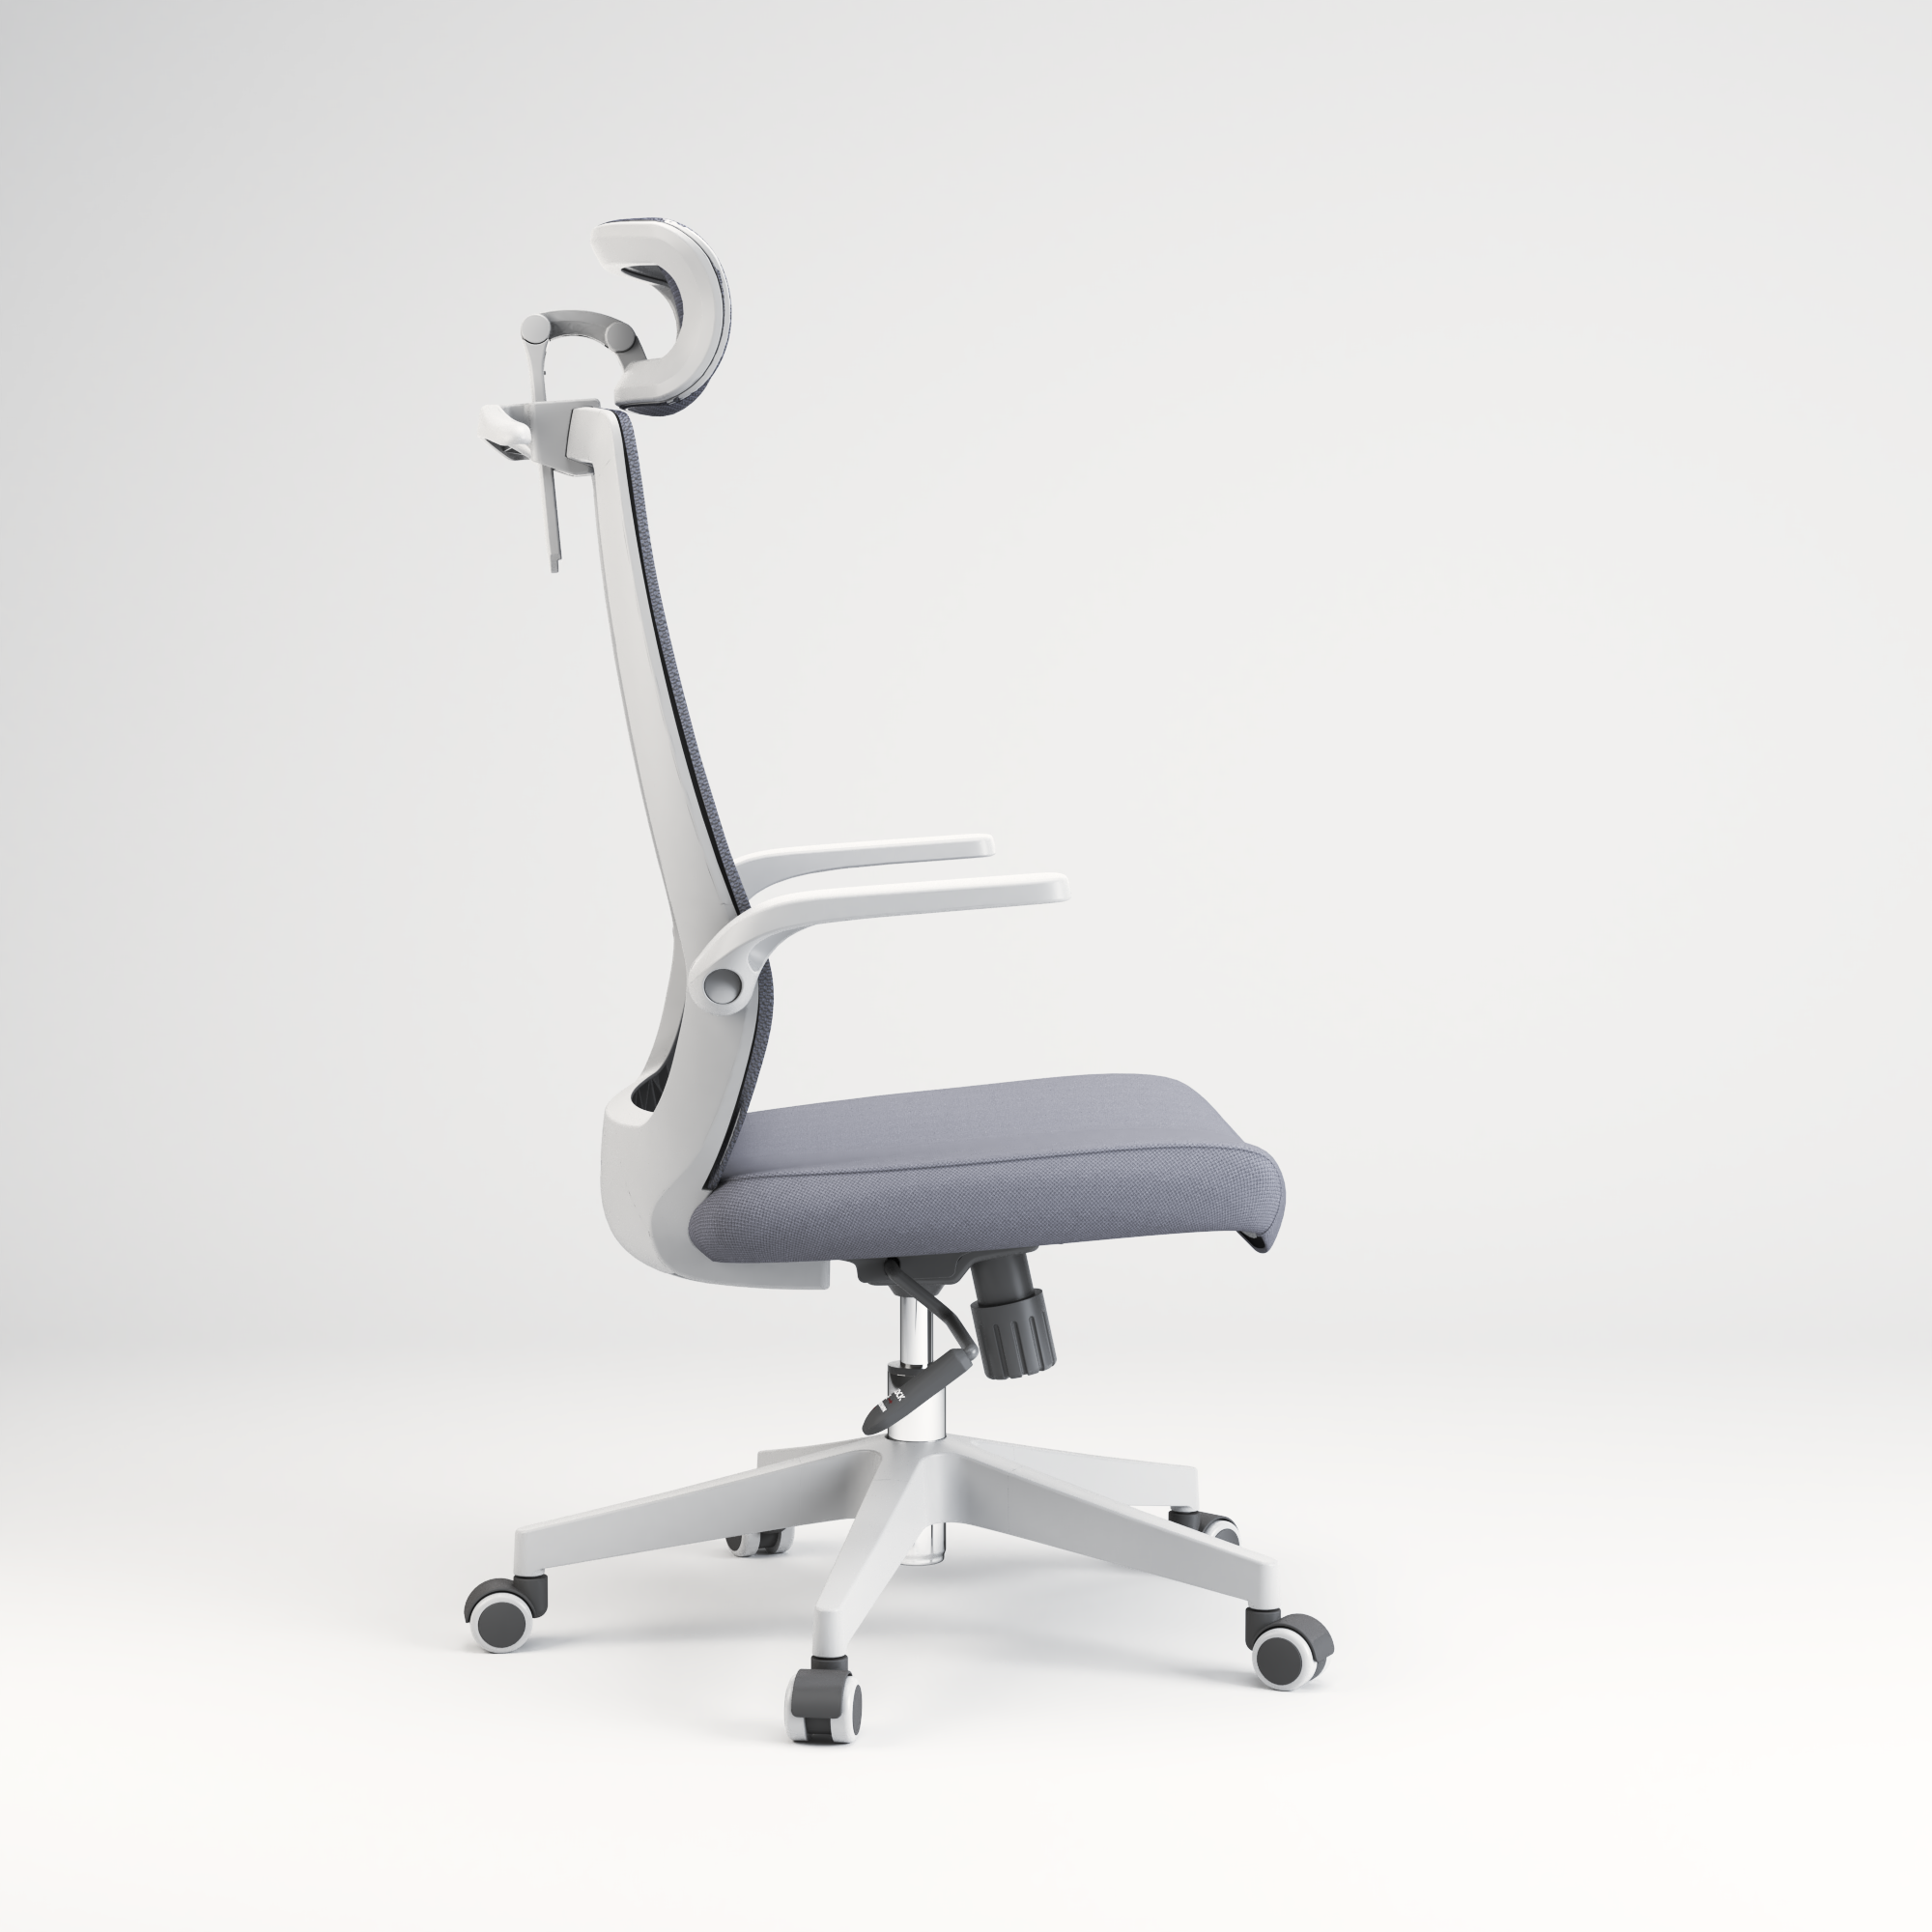 Sihoo M76A chaise de bureau ergonomique avec cintre